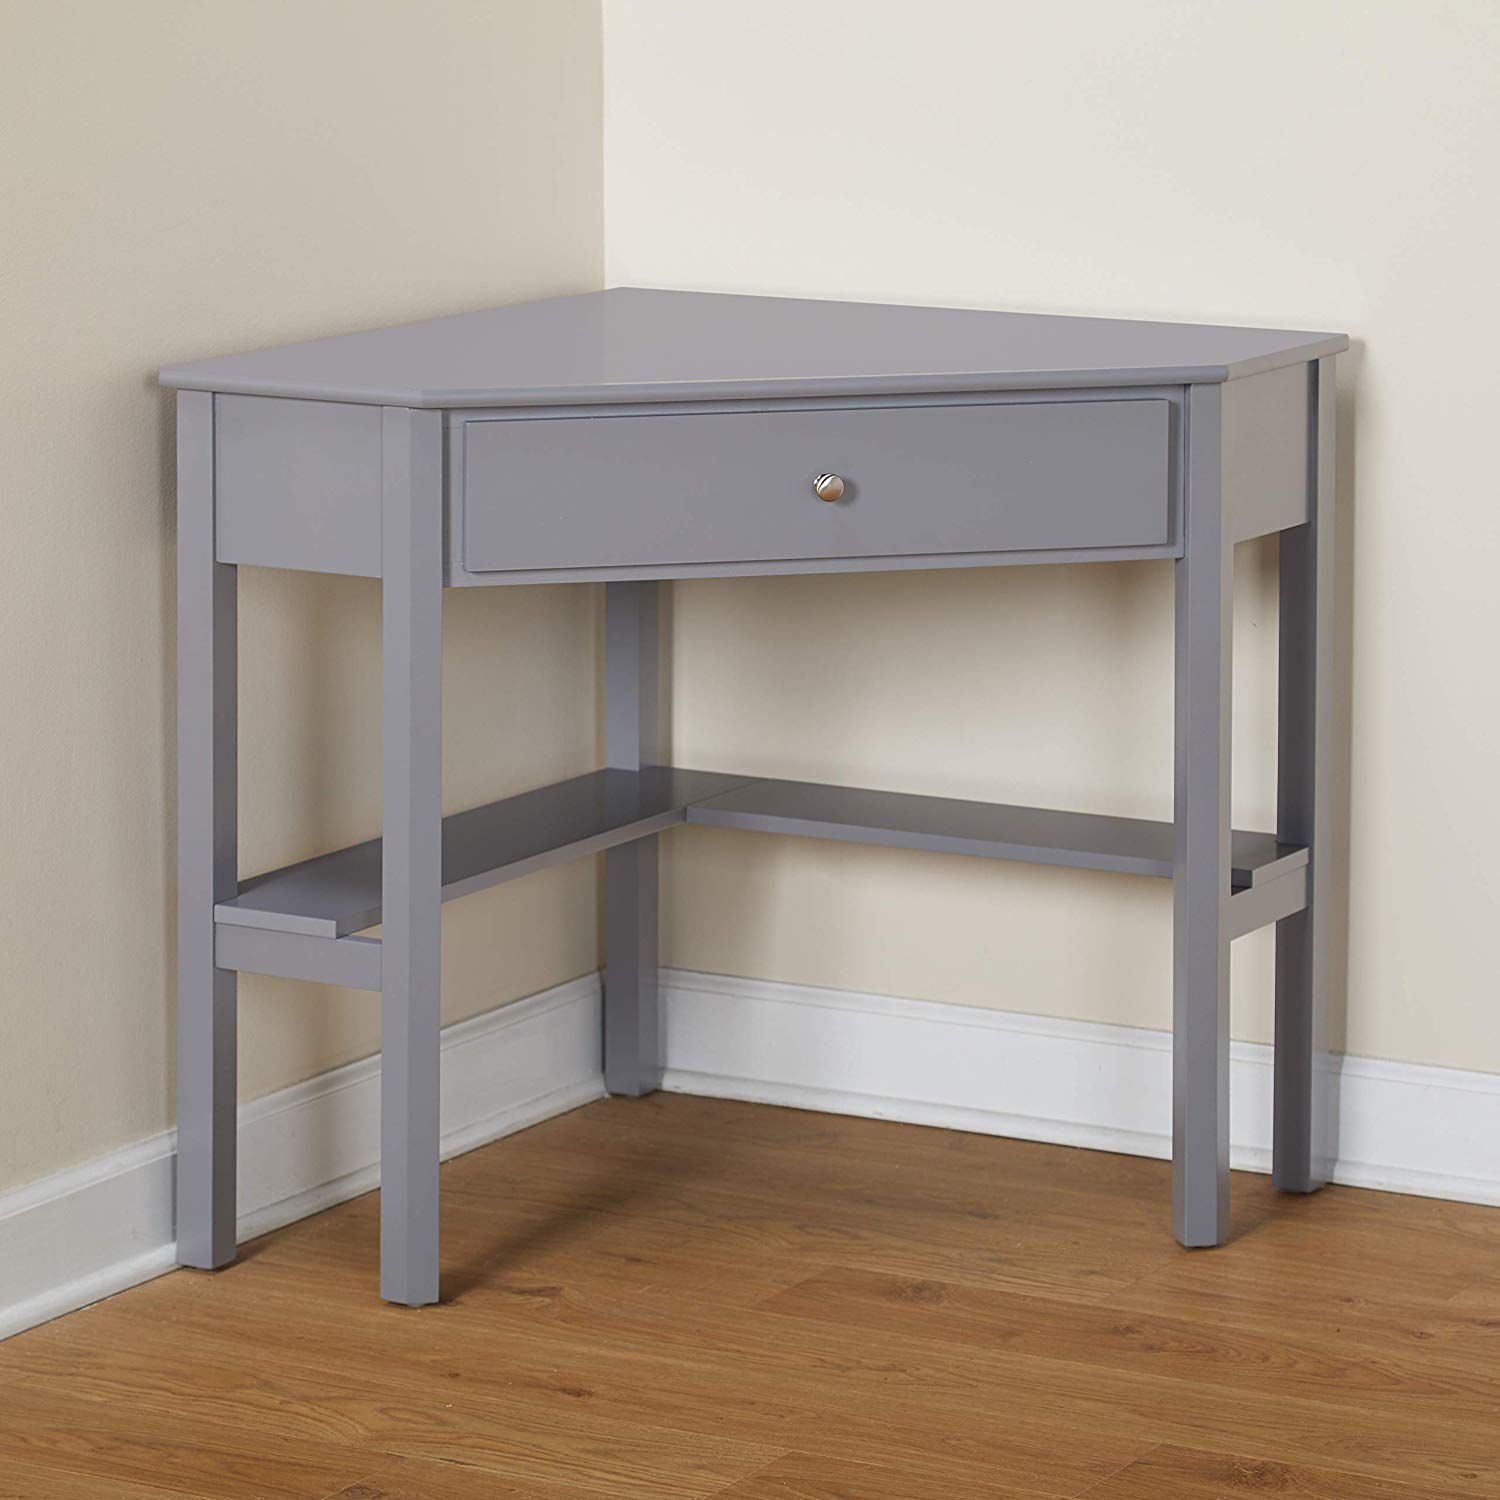 Furniture for Small Spaces, gray corner desk